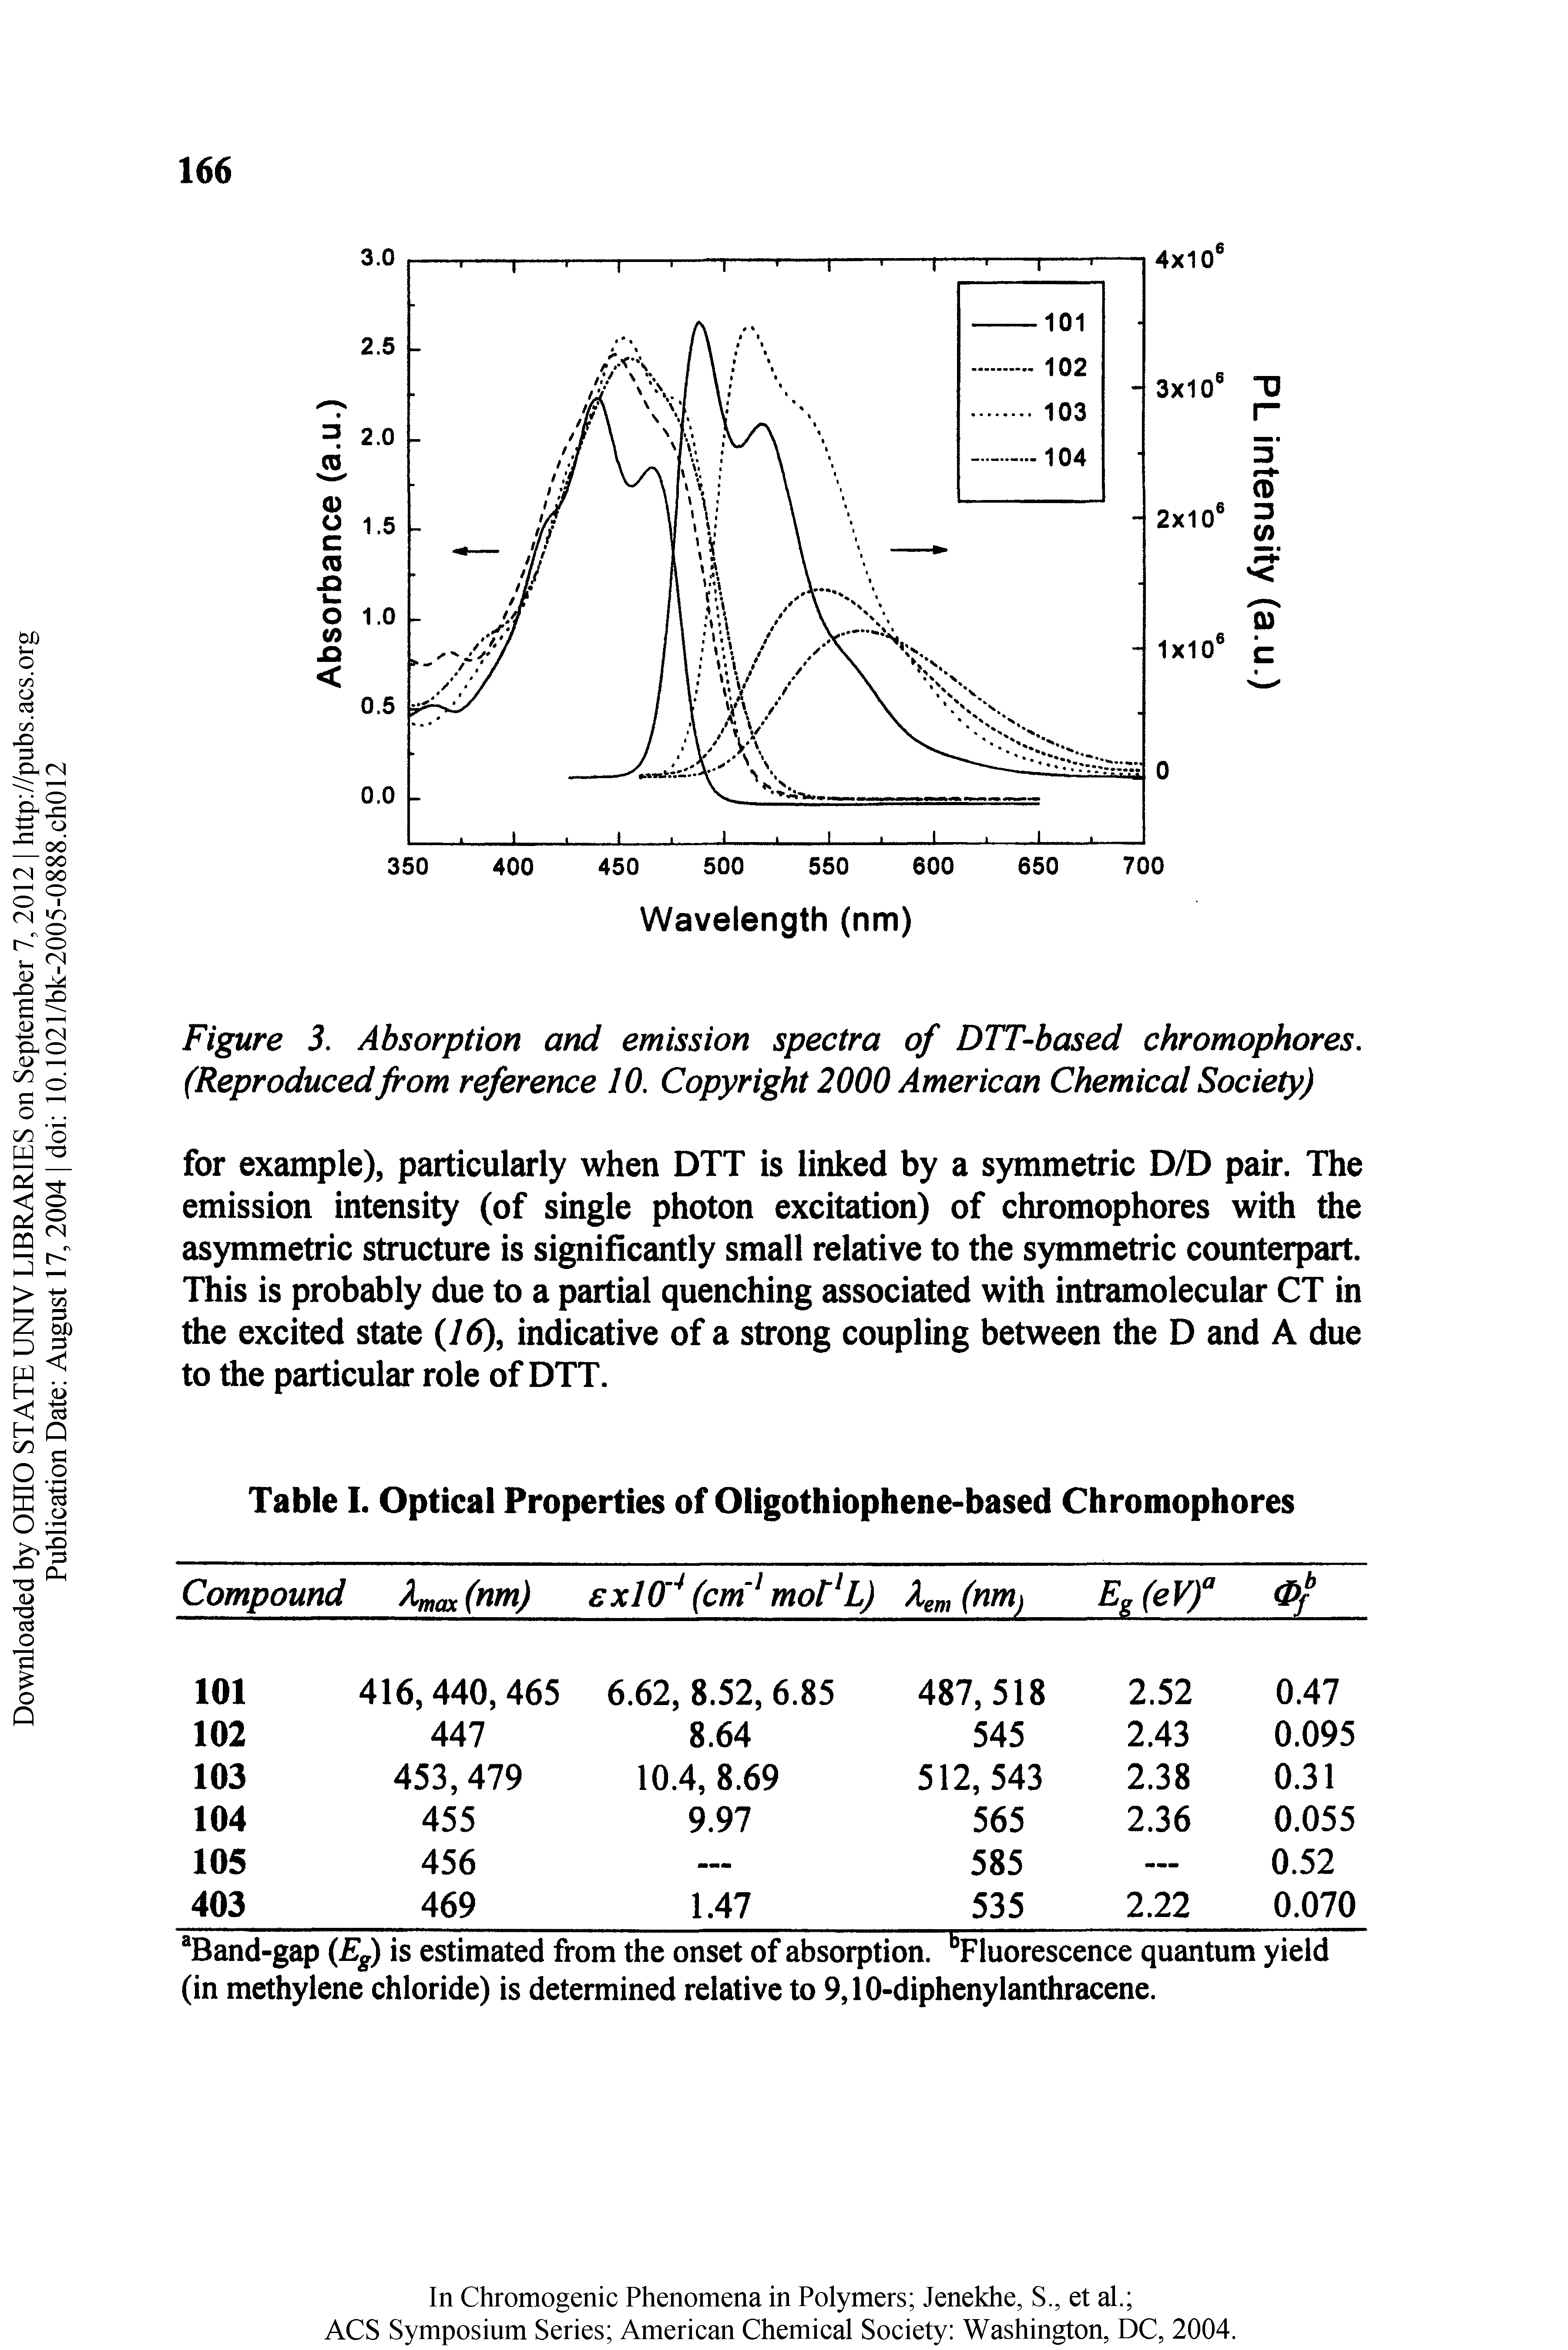 Table I. Optical Properties of Oligothiophene-based Chromophores...